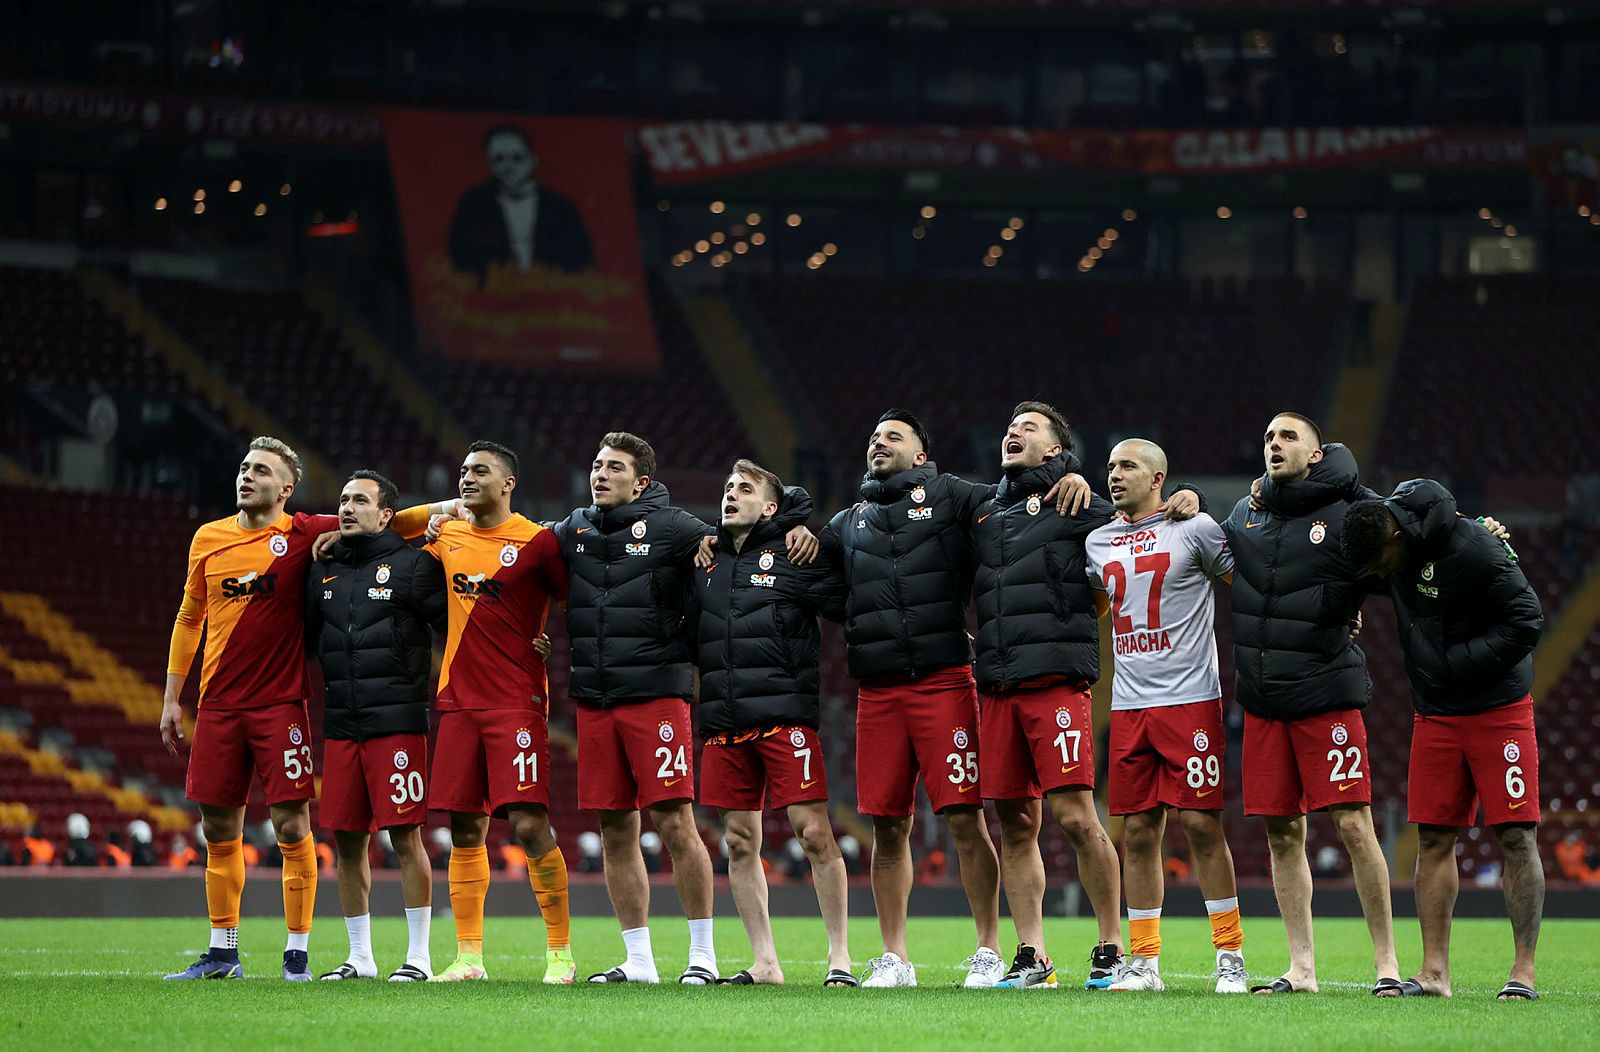 Галатасарай – Касымпаша прогноз 20 января: ставки и коэффициенты на матч чемпионата Турции